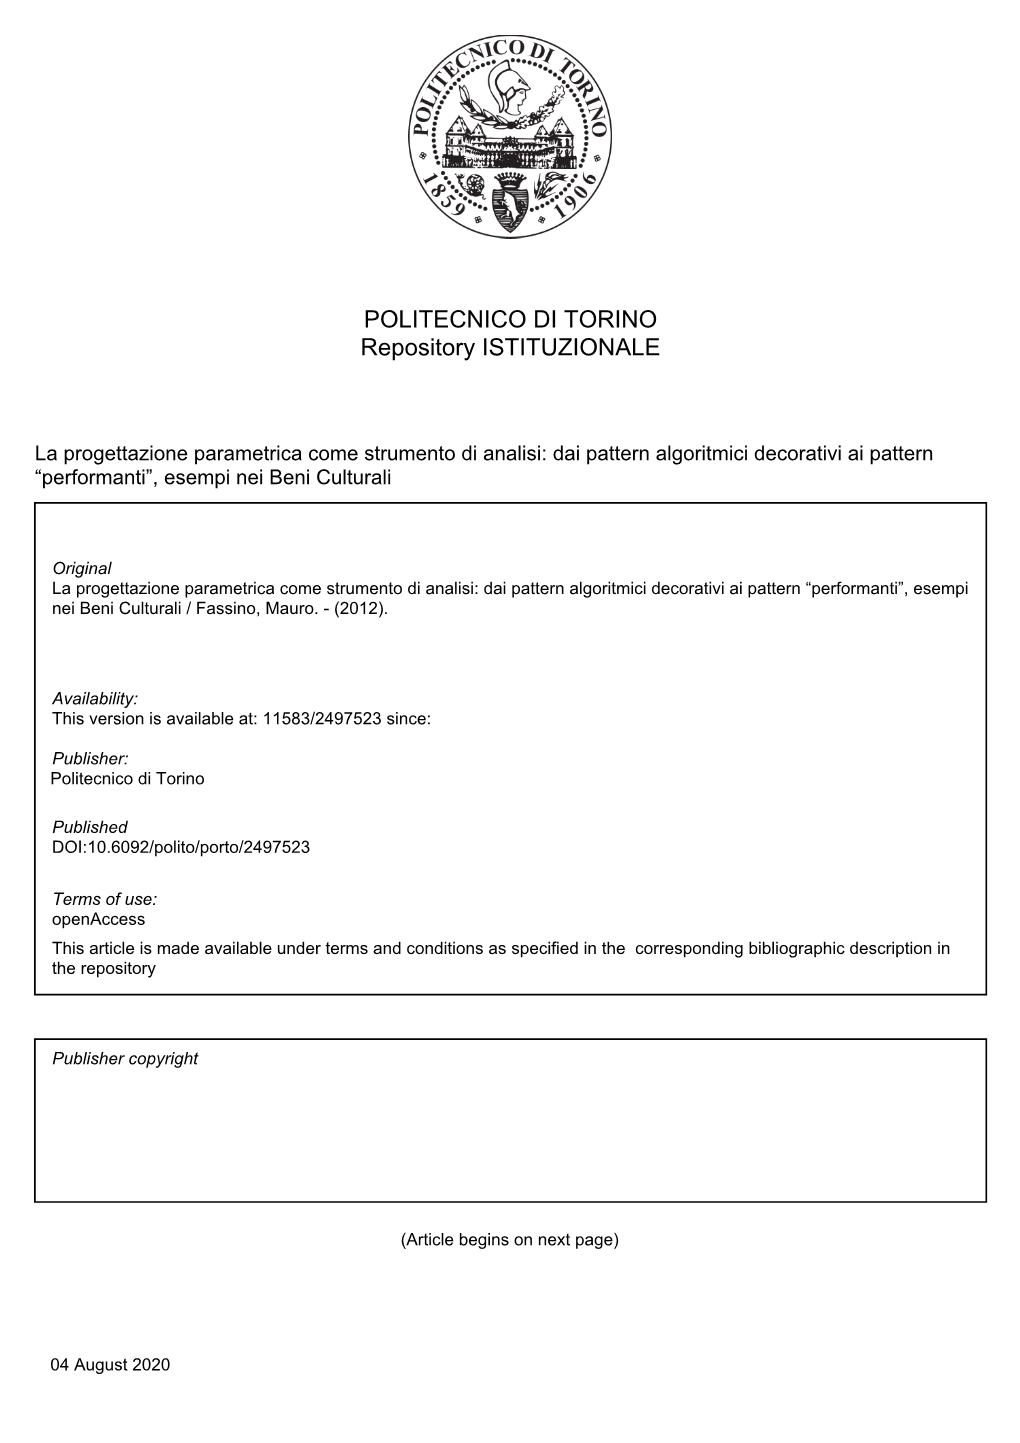 POLITECNICO DI TORINO Repository ISTITUZIONALE